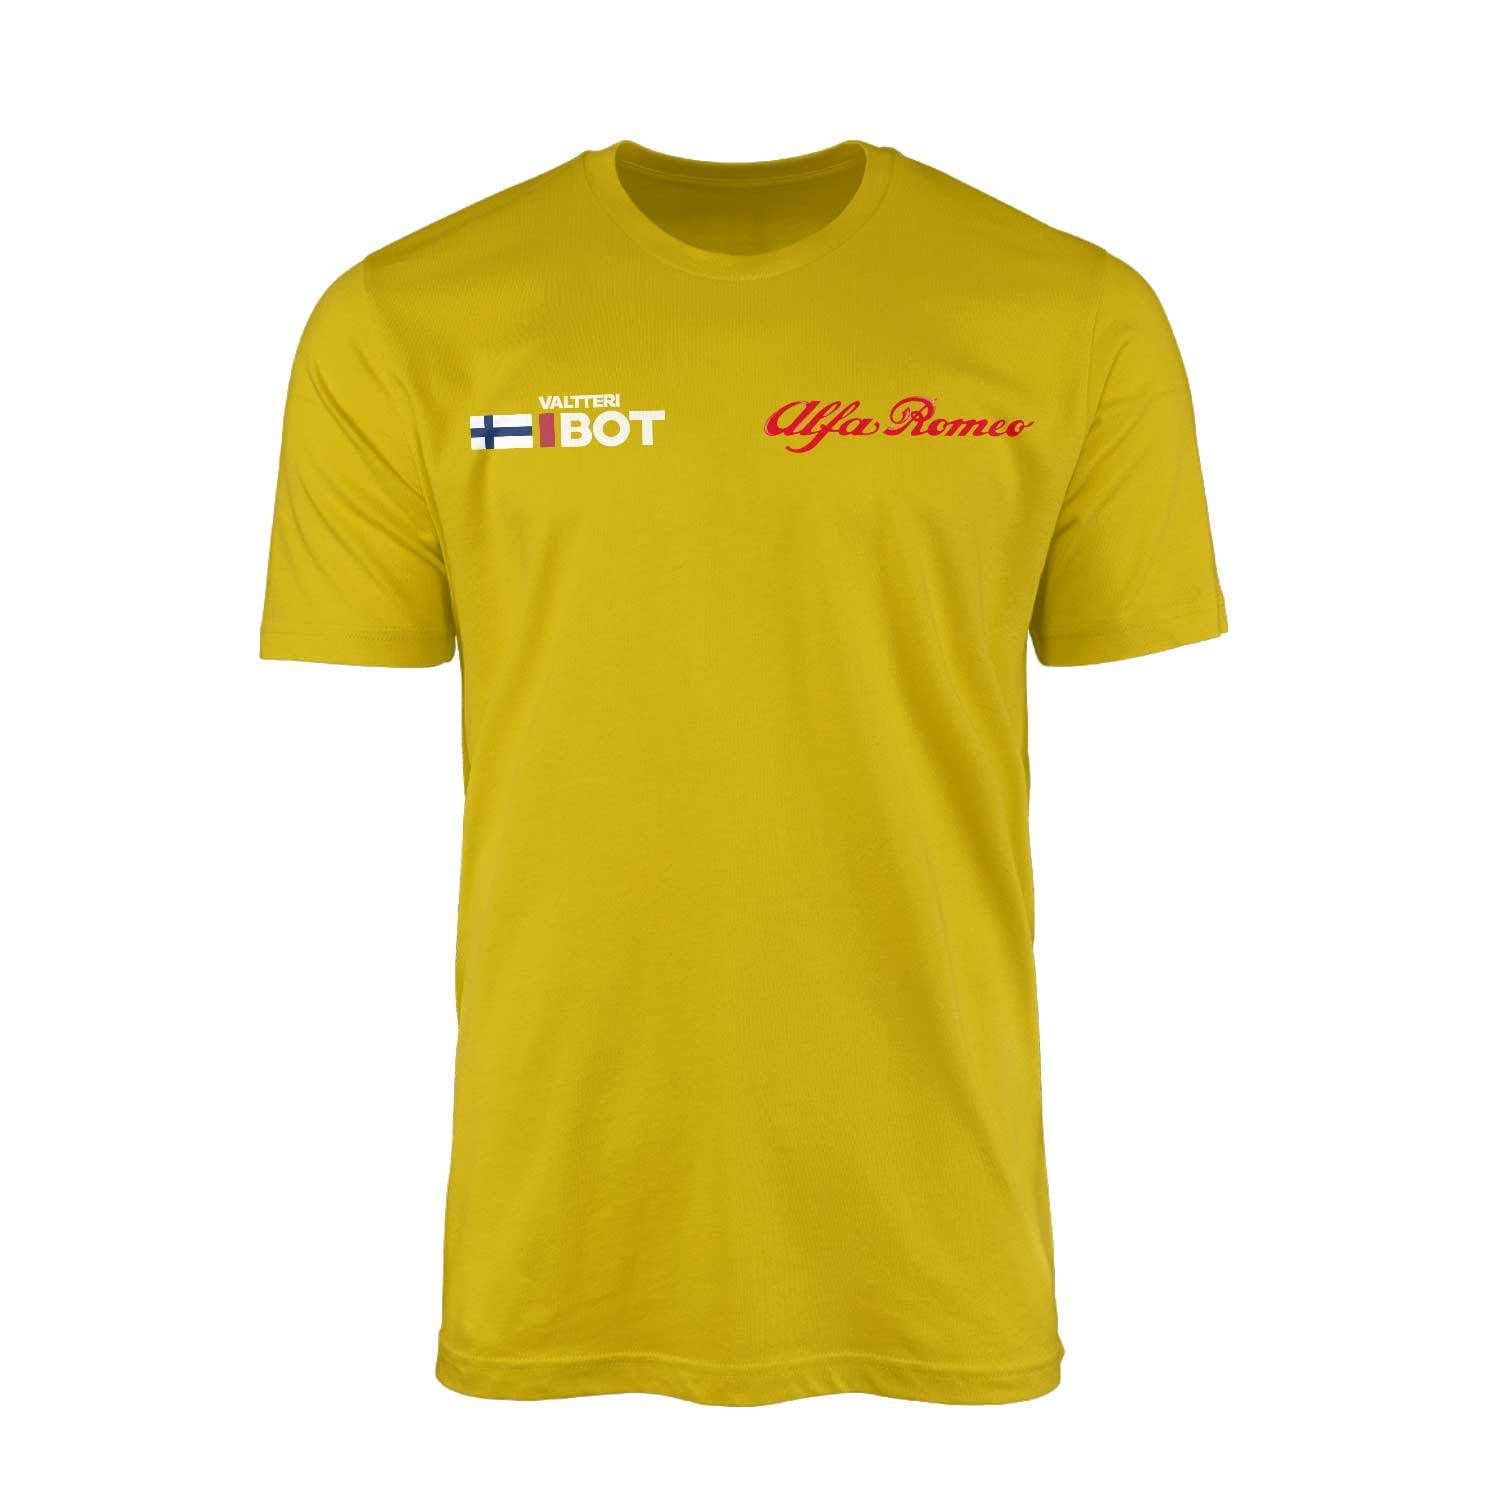 Valtteri Bottas Tag Sarı Tişört